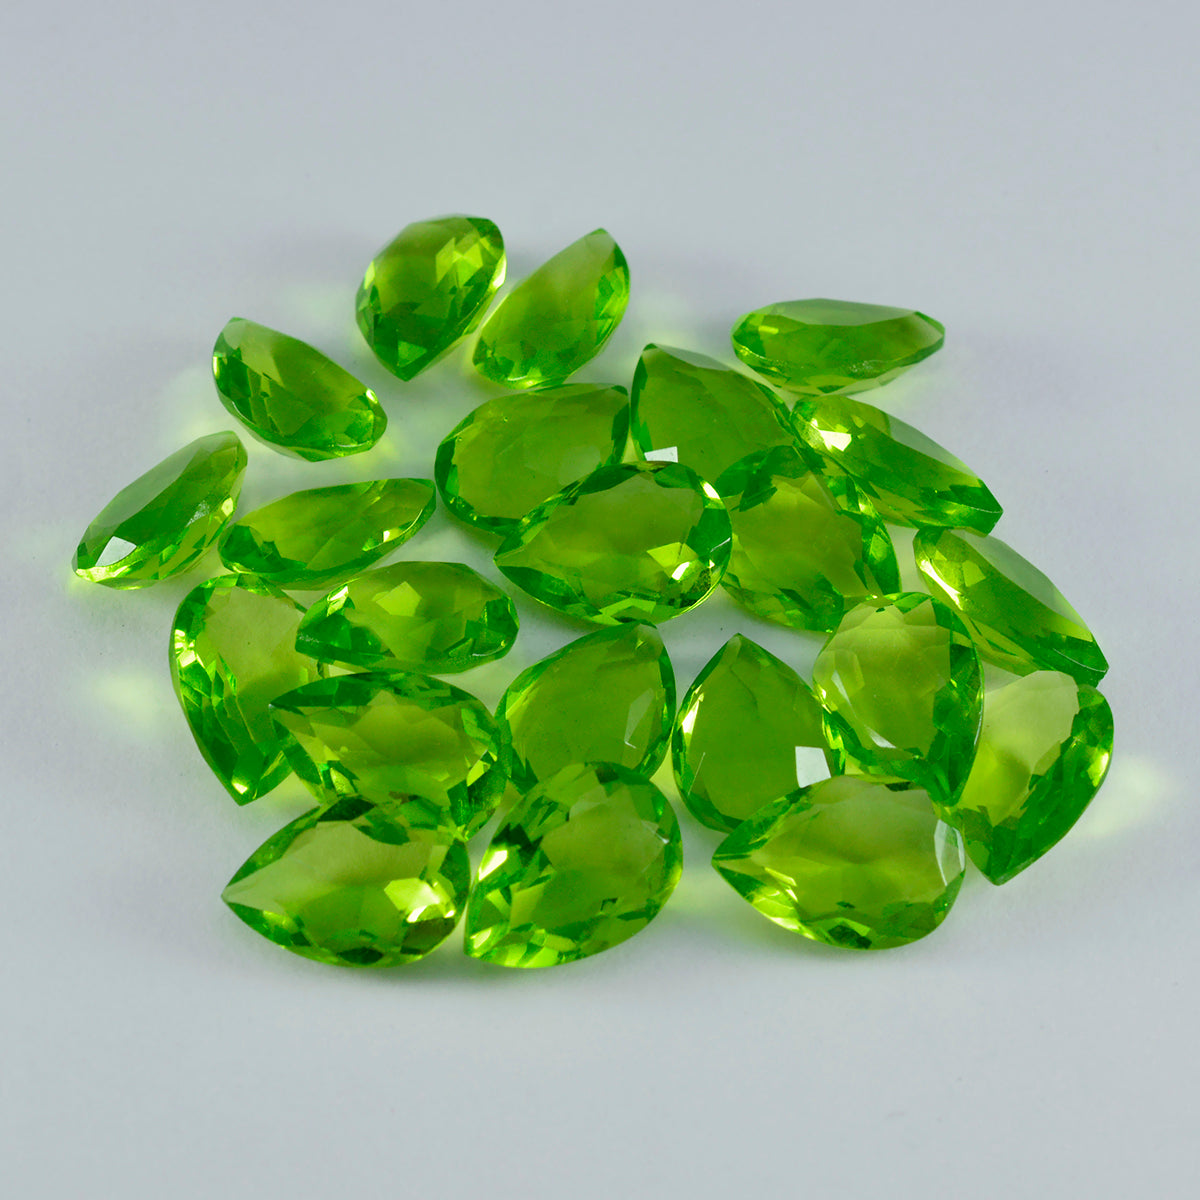 riyogems 1 шт. зеленый перидот cz граненые 7x10 мм грушевидные драгоценные камни сладкого качества